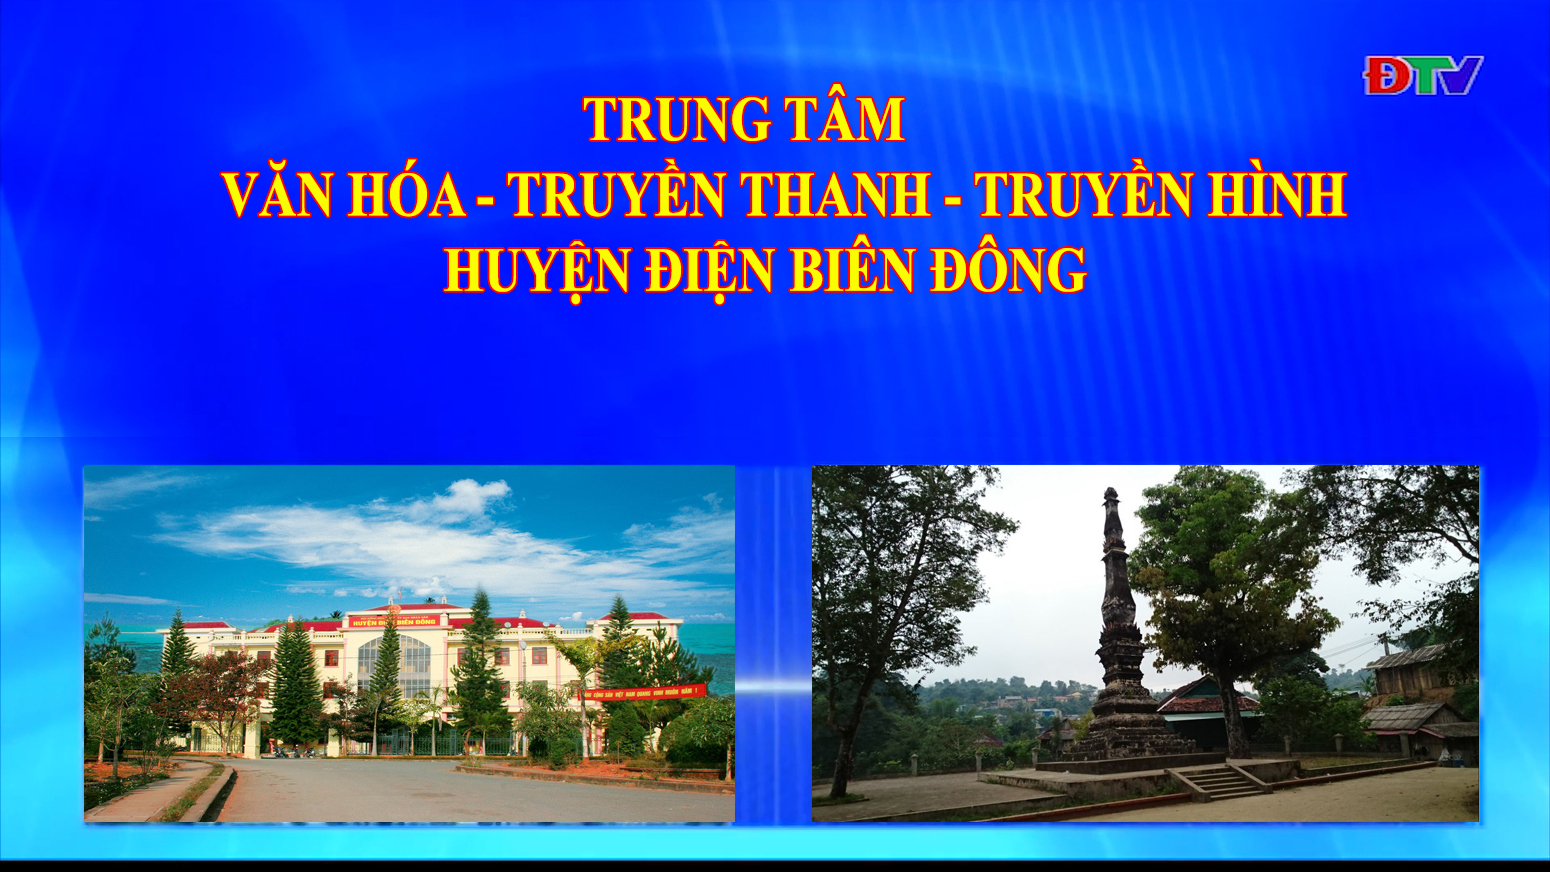 Trung tâm VH-TTTH huyện Điện Biên Đông (Ngày 17-7-2021)